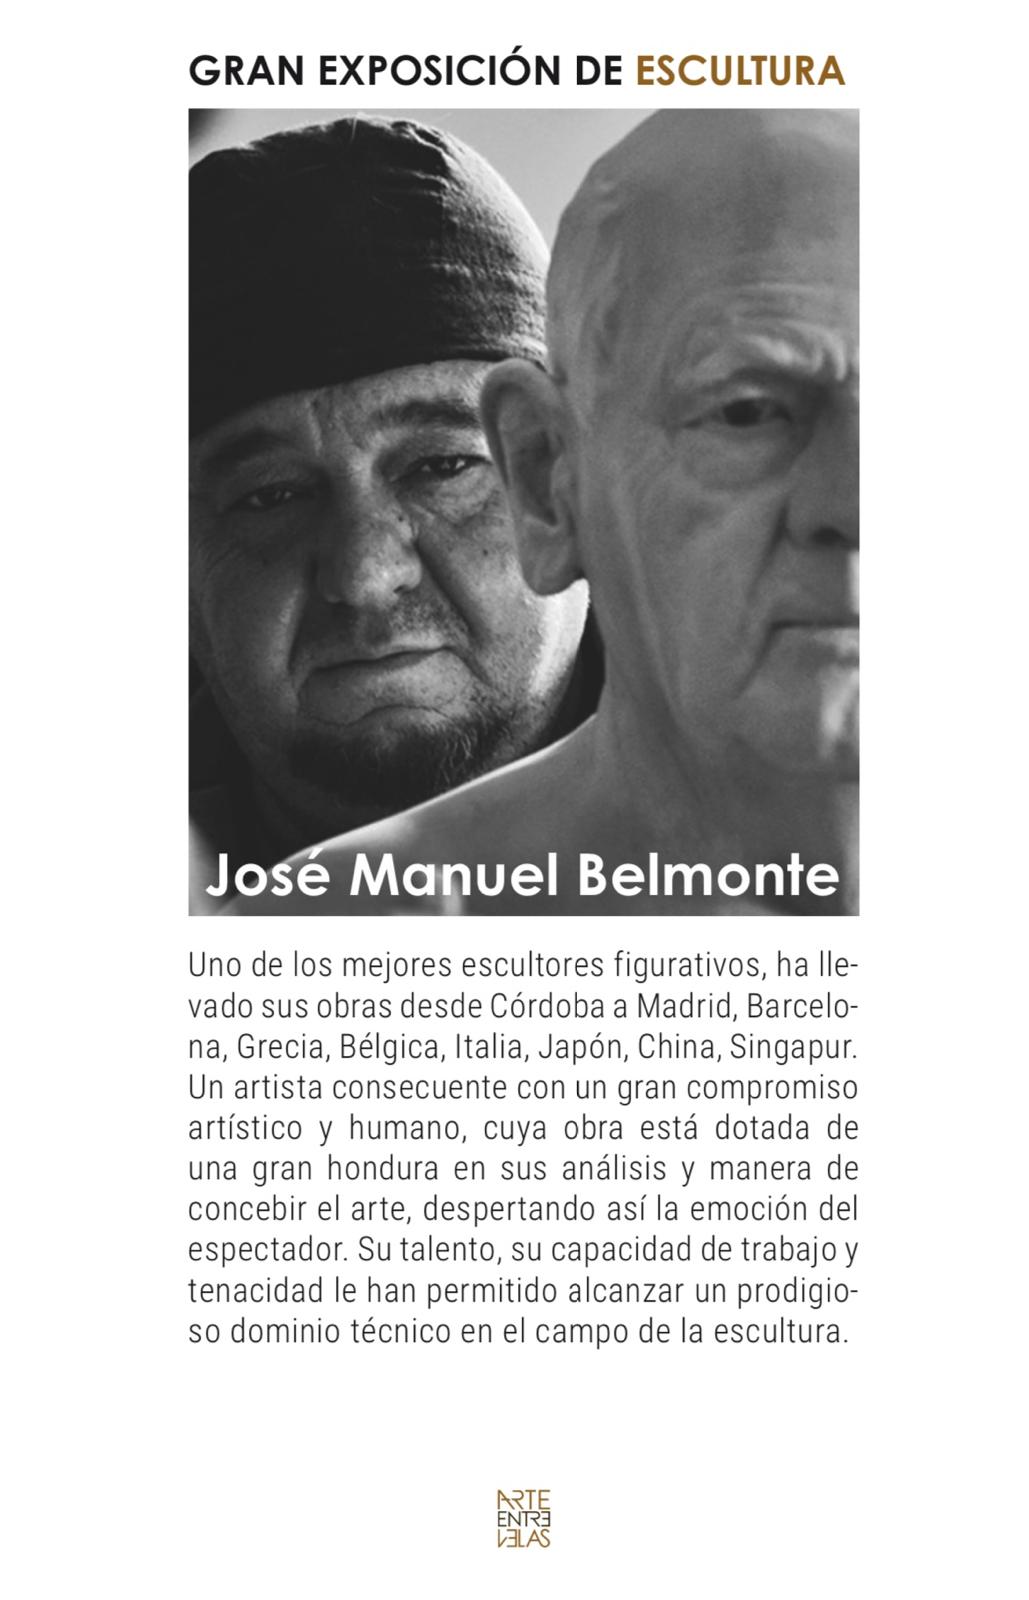 Exposición de pintura Carlos Muro y José Manuel Belmonte